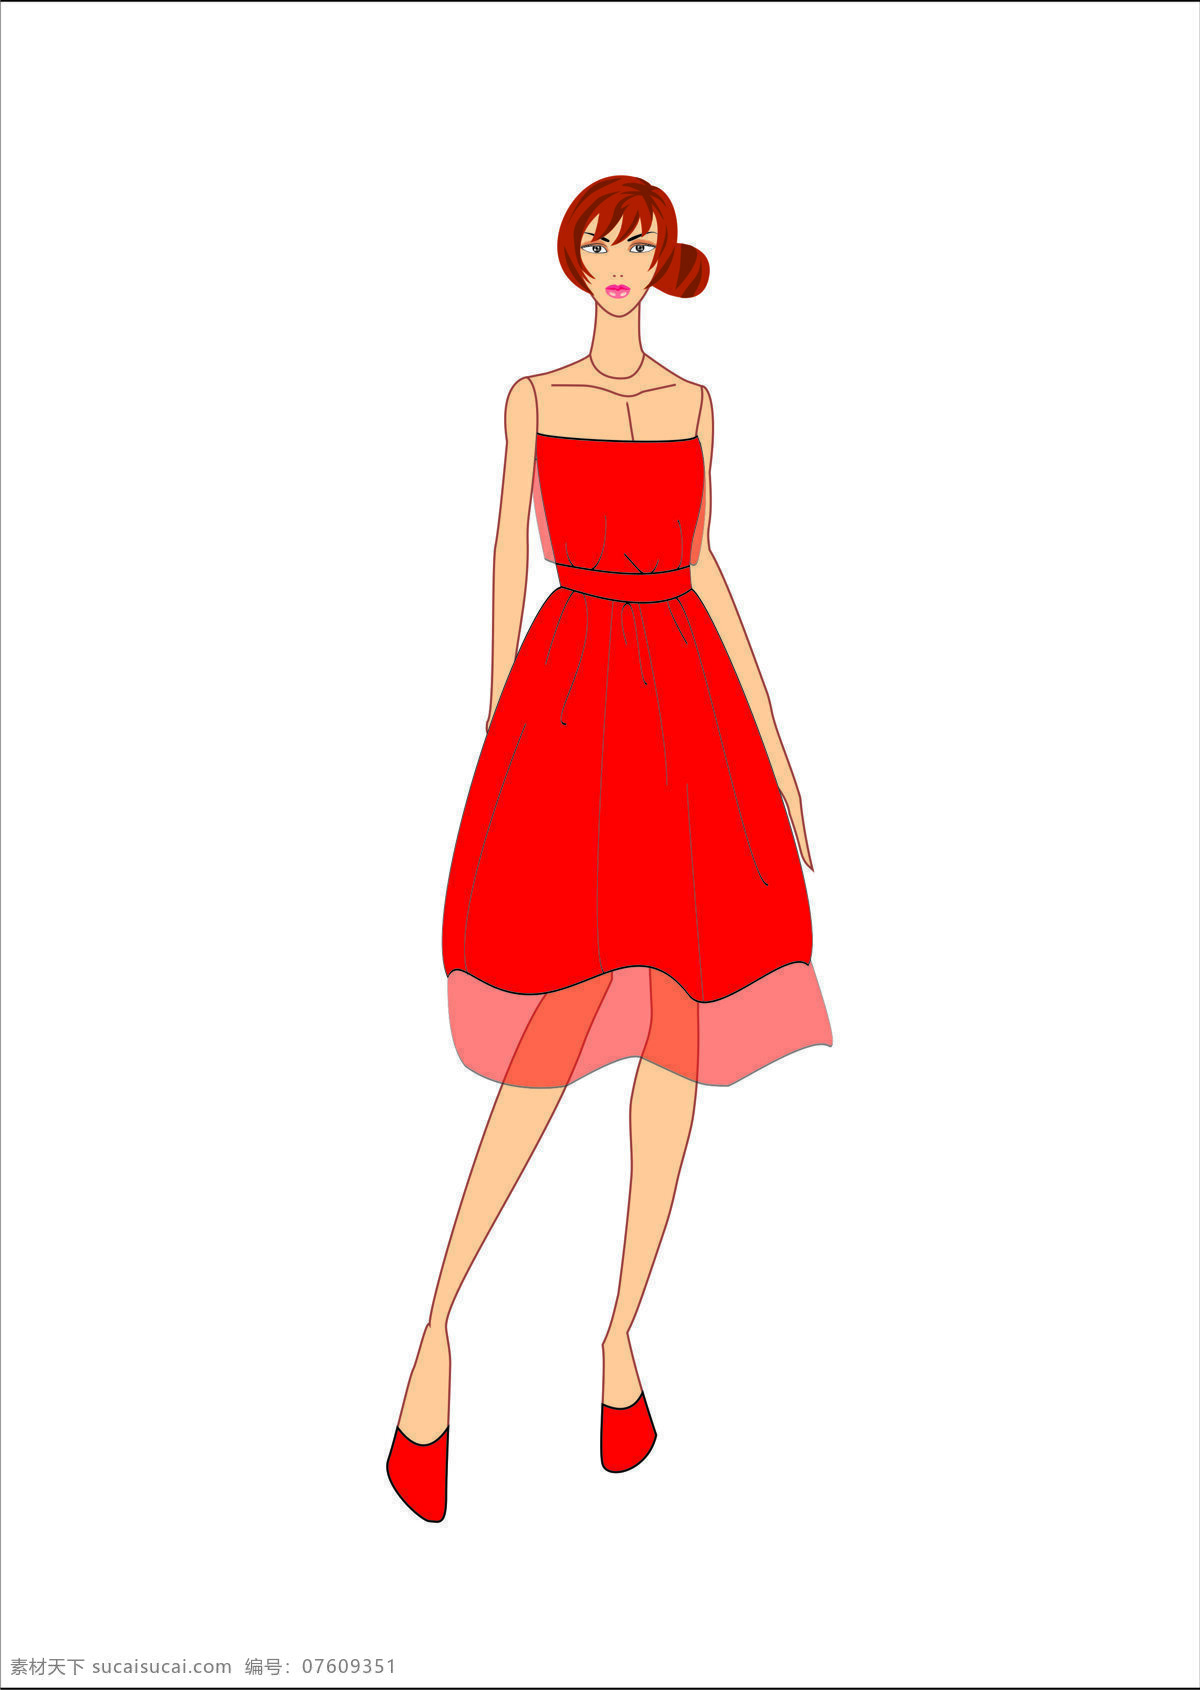 服装 服装设计 模板下载 红色 连衣裙 人体 设计素材 效果图 文化艺术 其他服装素材